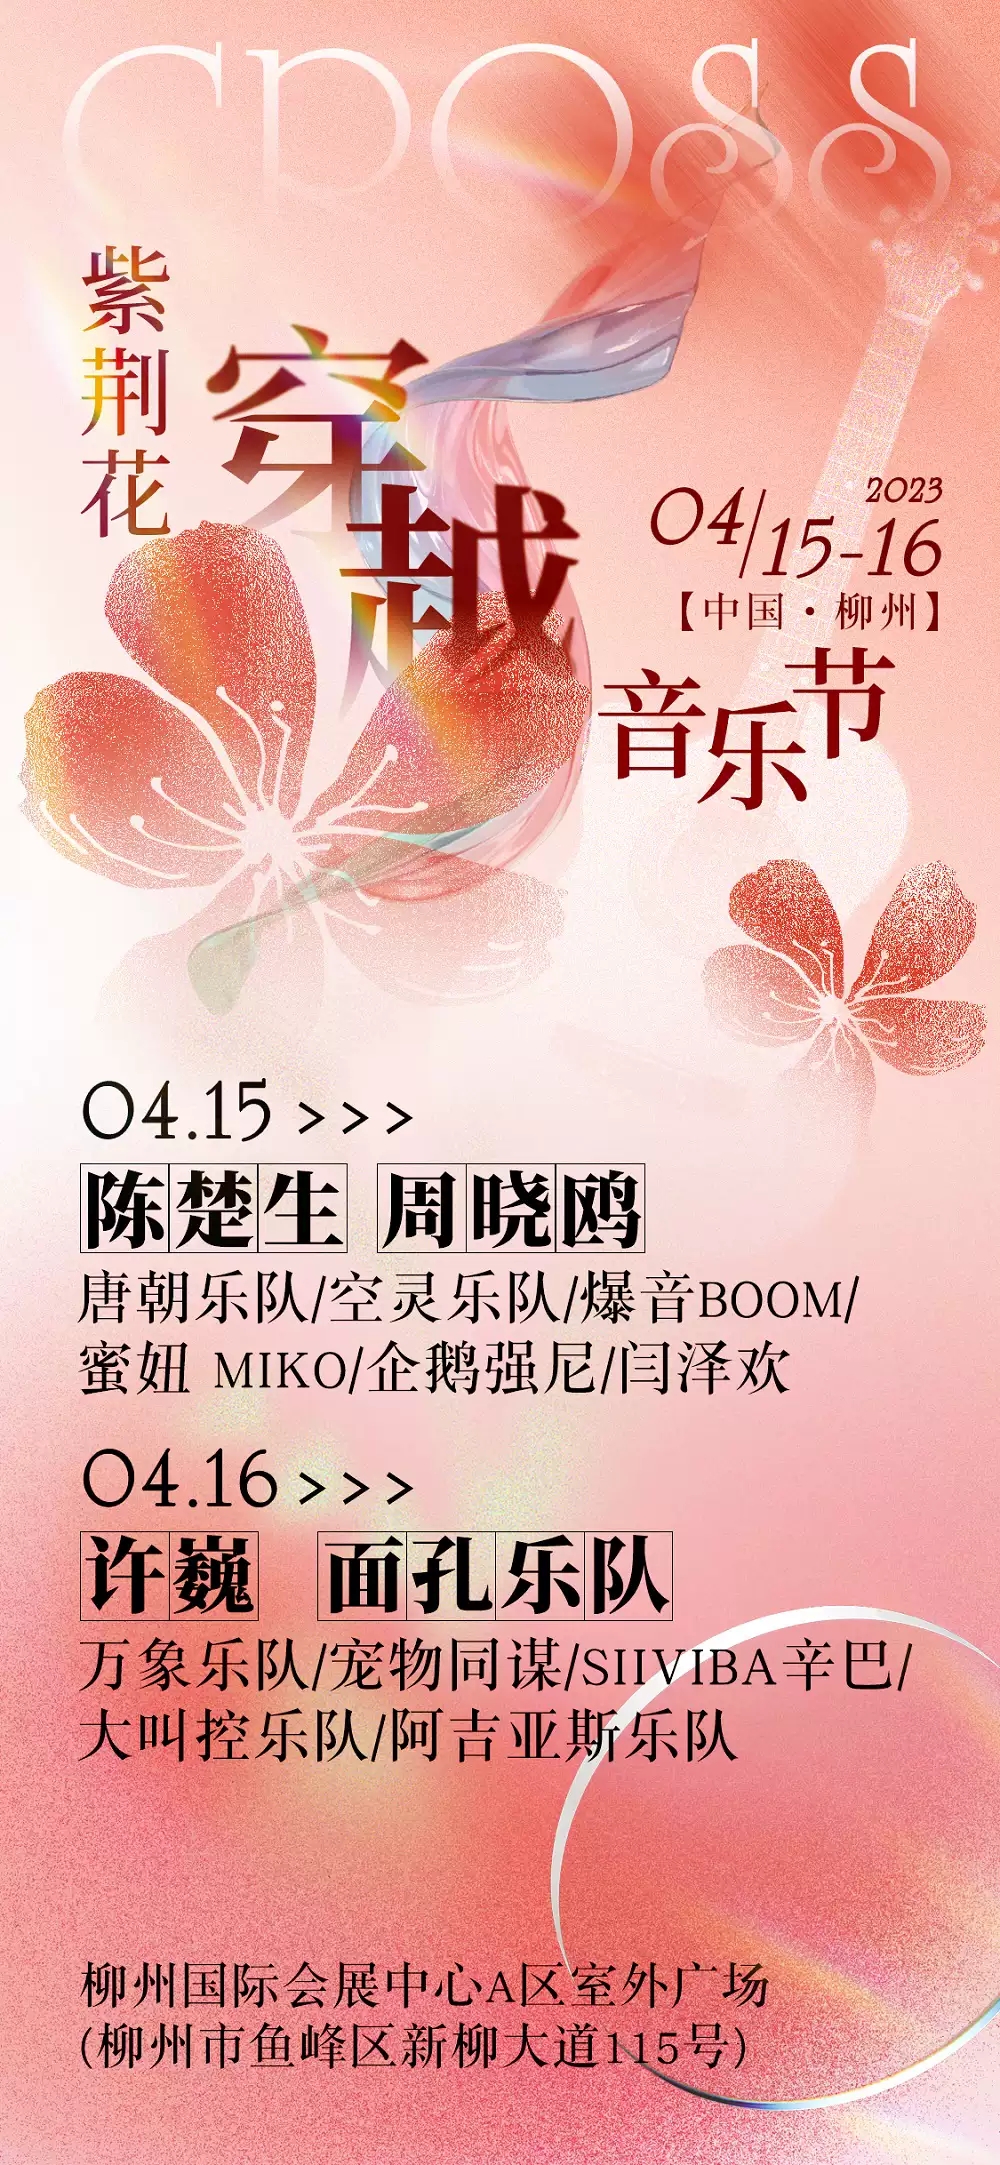 2023柳州紫荆花穿越音乐节阵容一览+购票指南